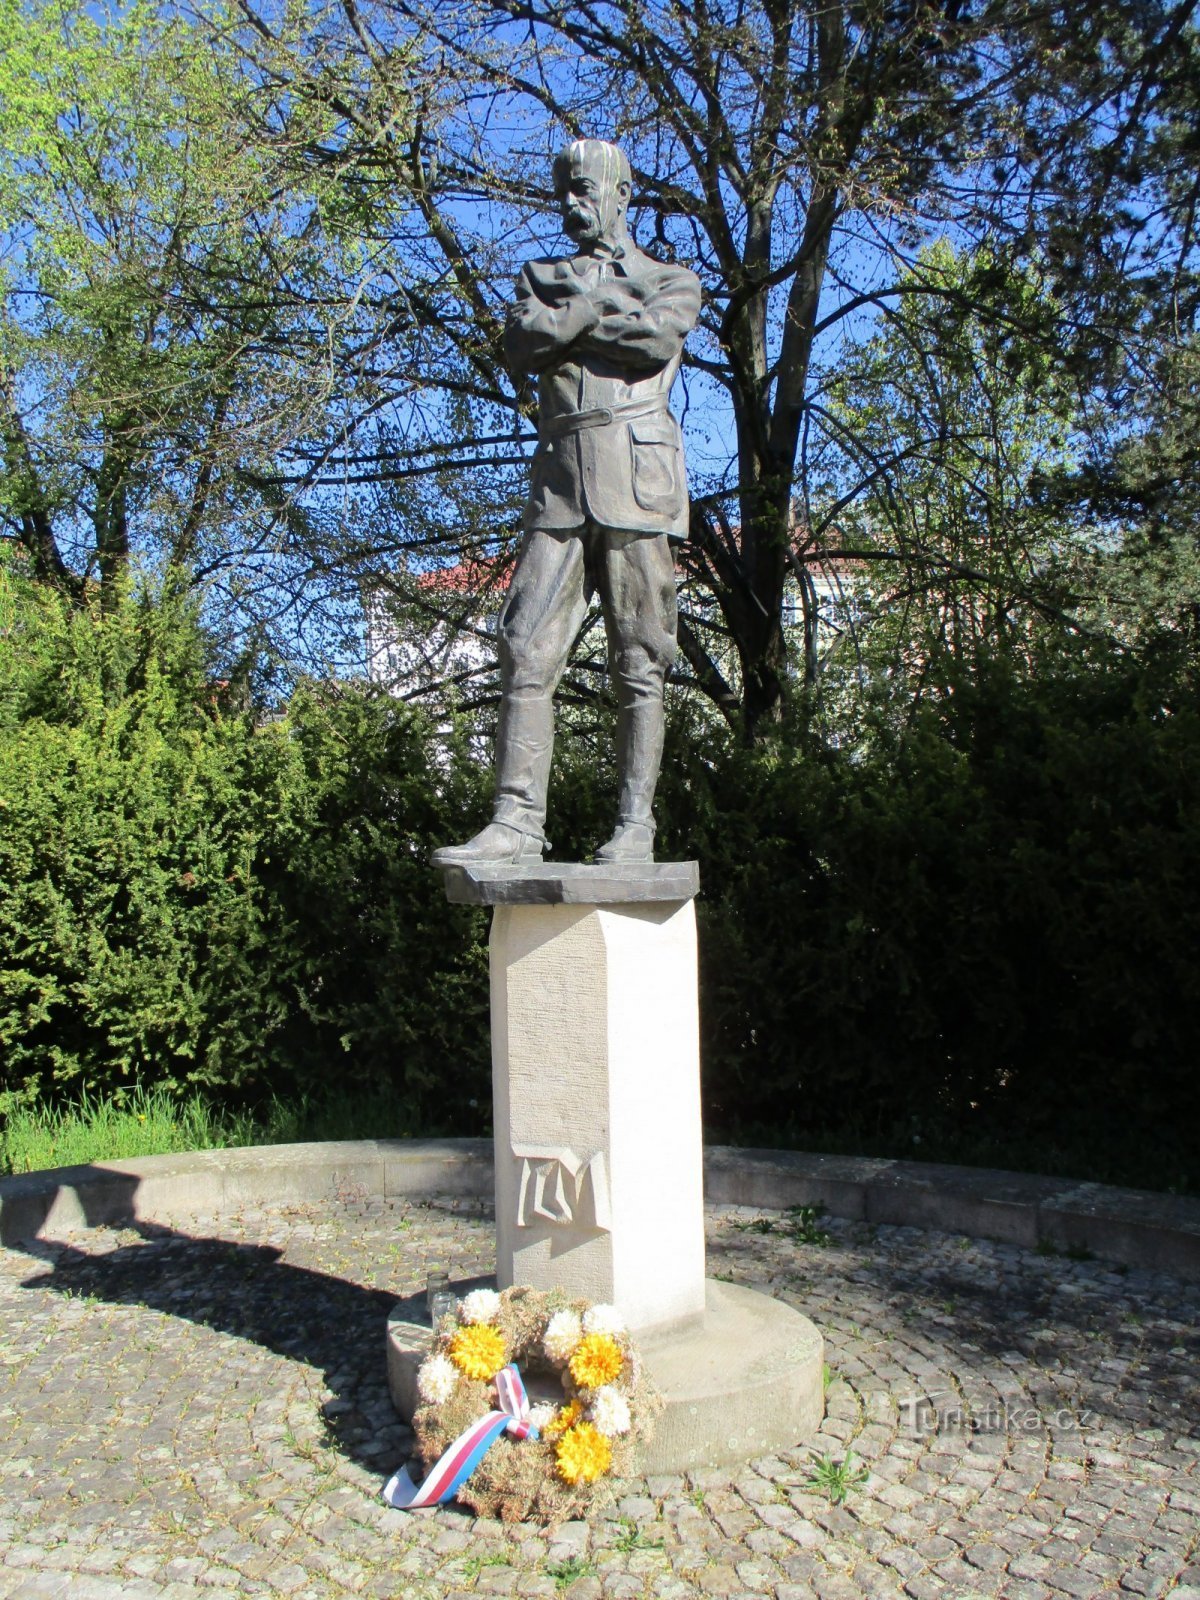 Denkmal für TG Masaryk (Jaroměř, 22.4.2020. April XNUMX)